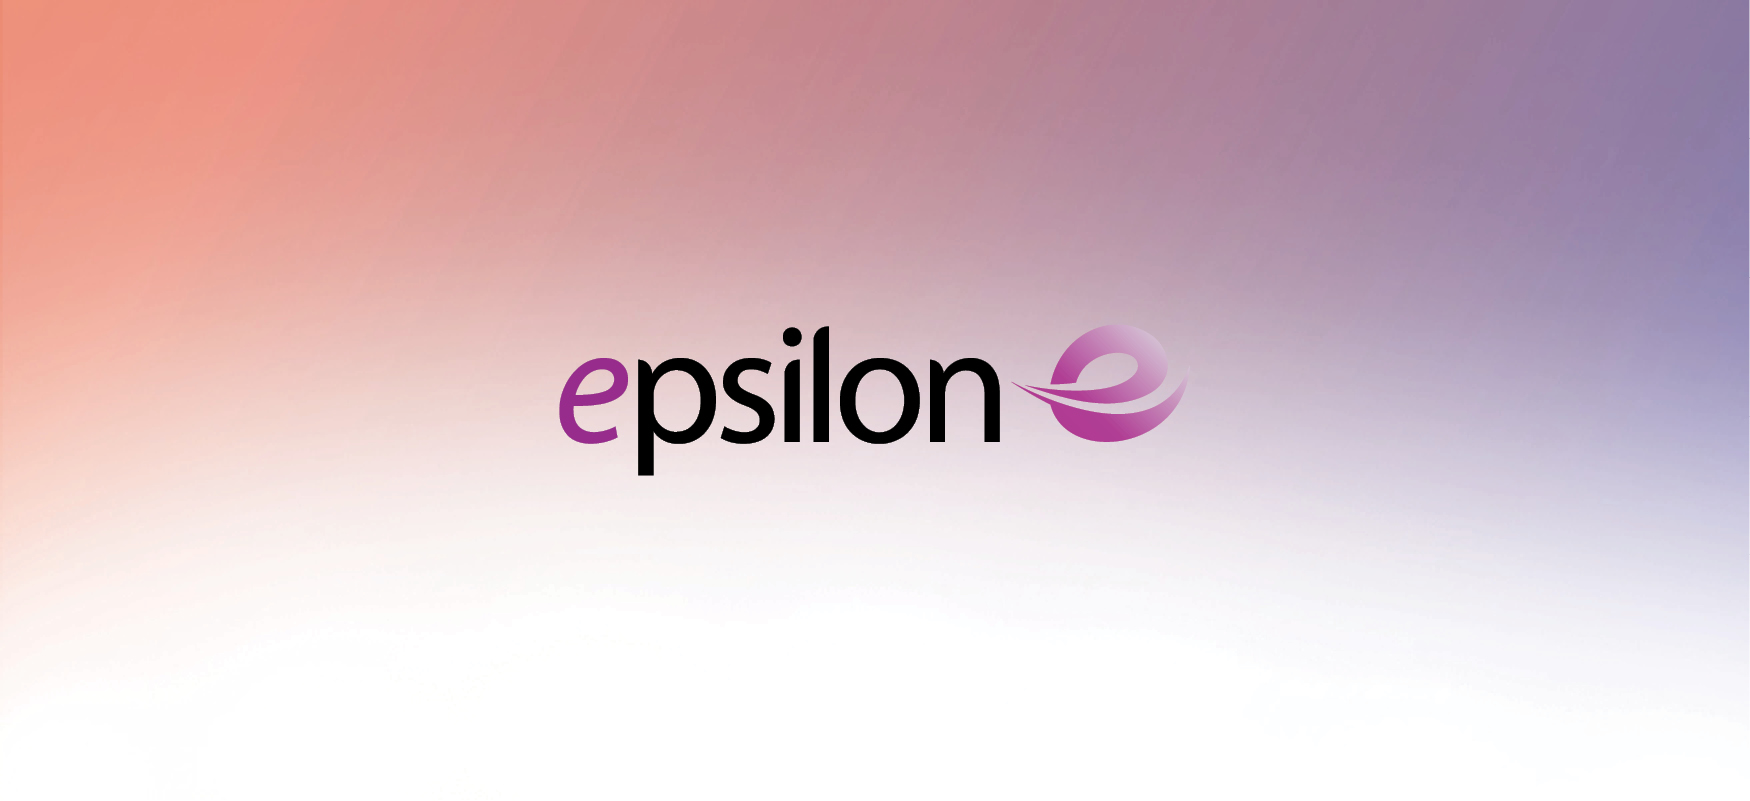 Epsilon Expands its Cloud Connectivity in Singapore